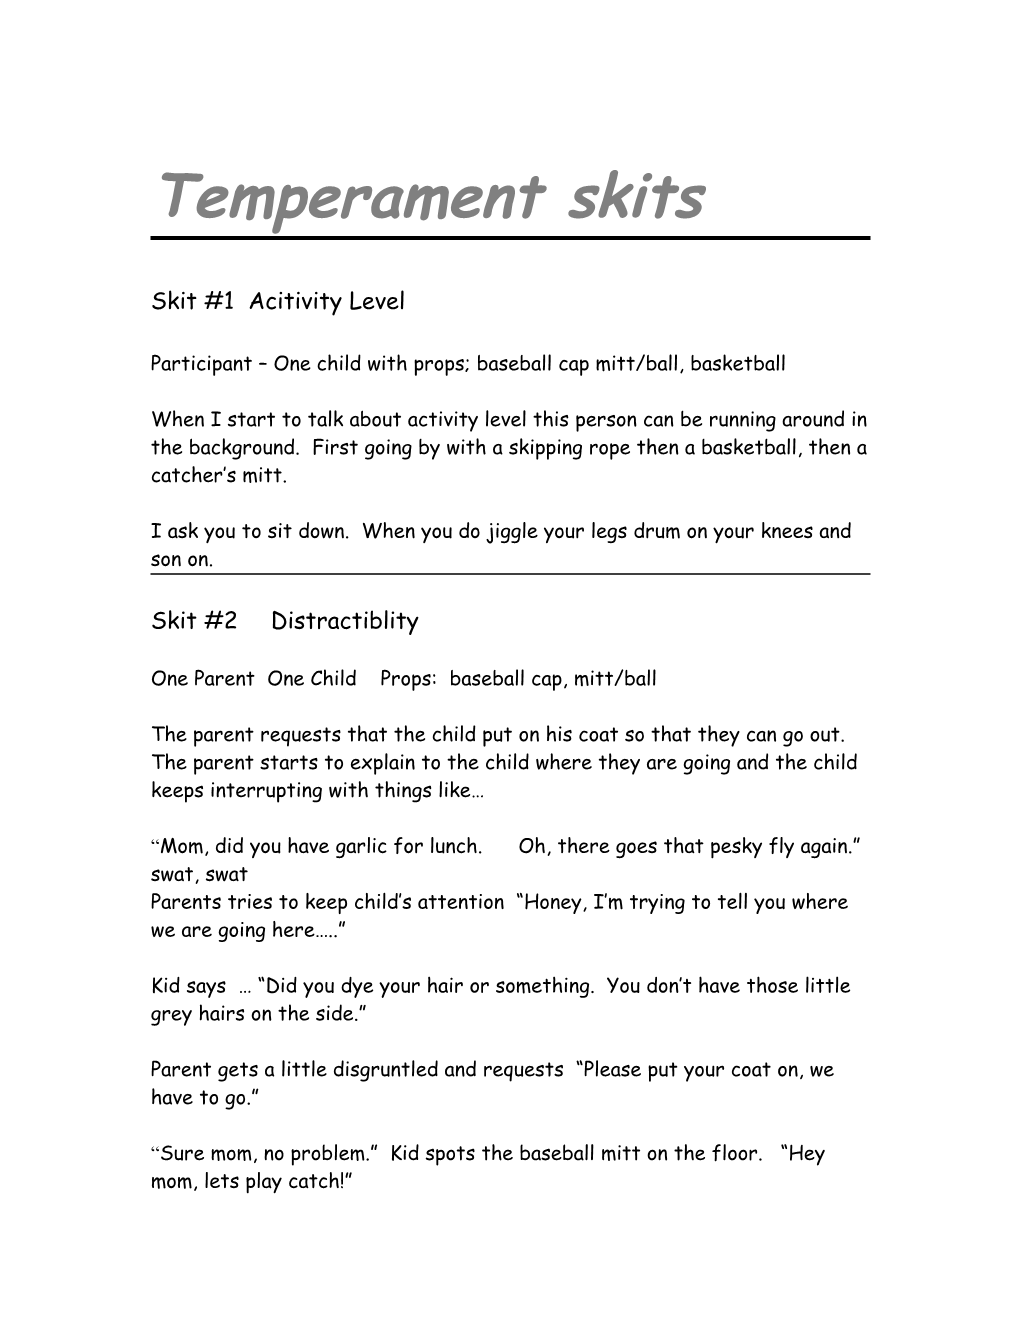 Temperament Skits